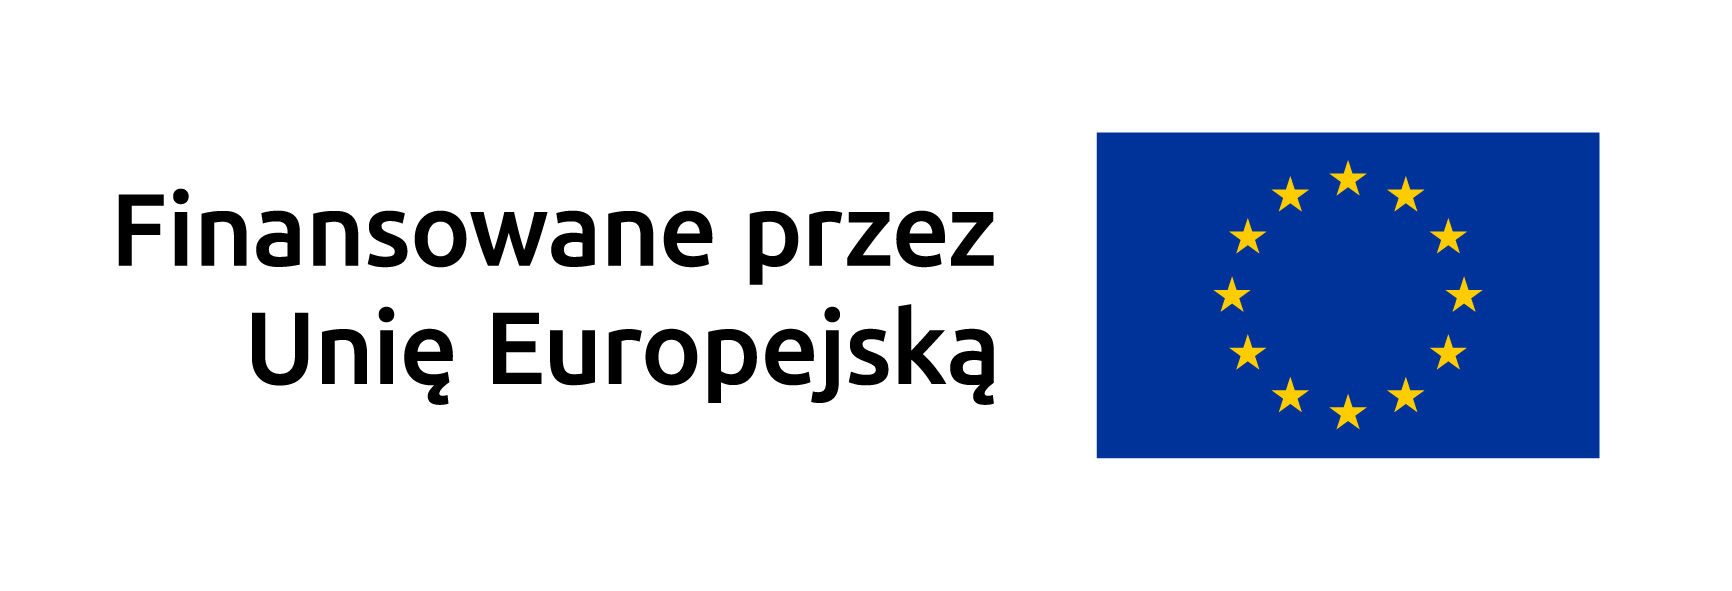 Logo_UE_Finansowane_biała_obwódka_RGB